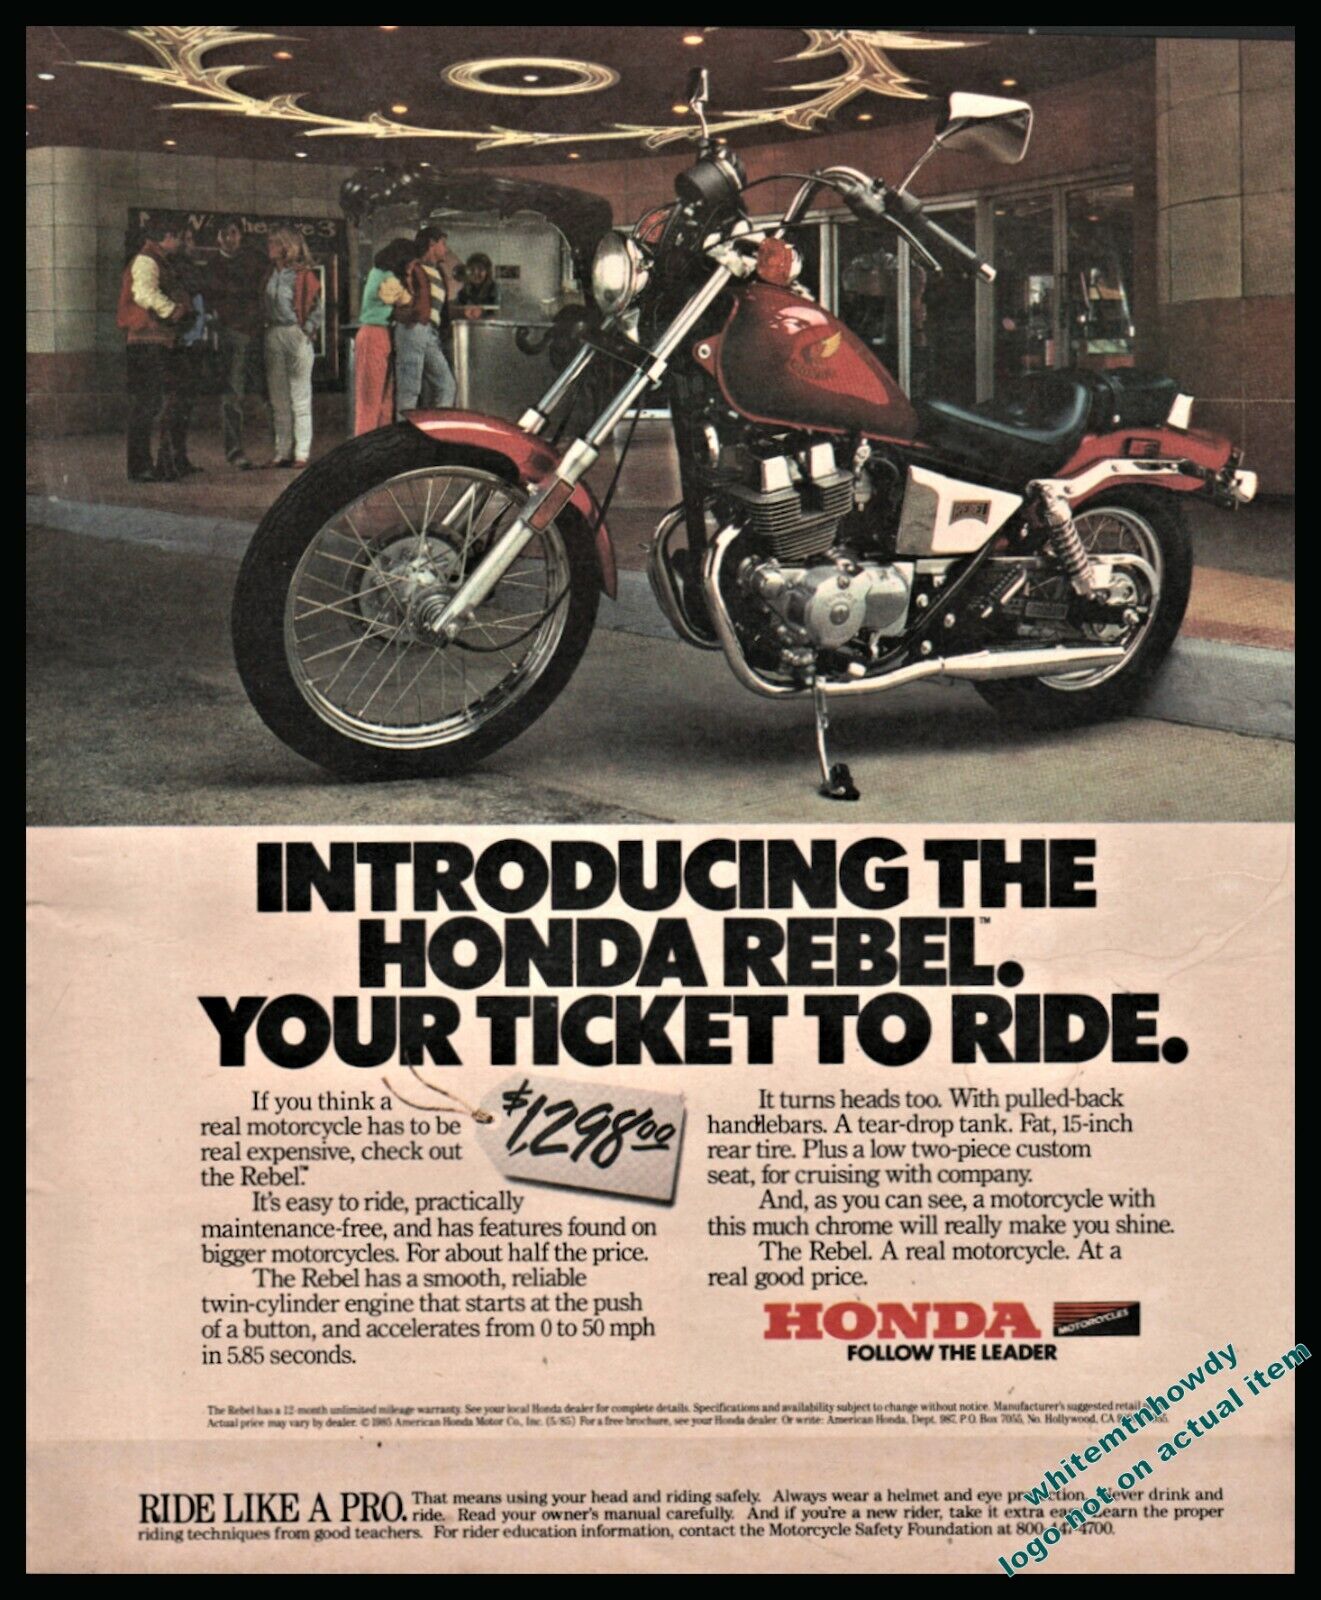 1985 HONDA Rebel Vintage Motorcycle Large Format Photo AD shown w/original price